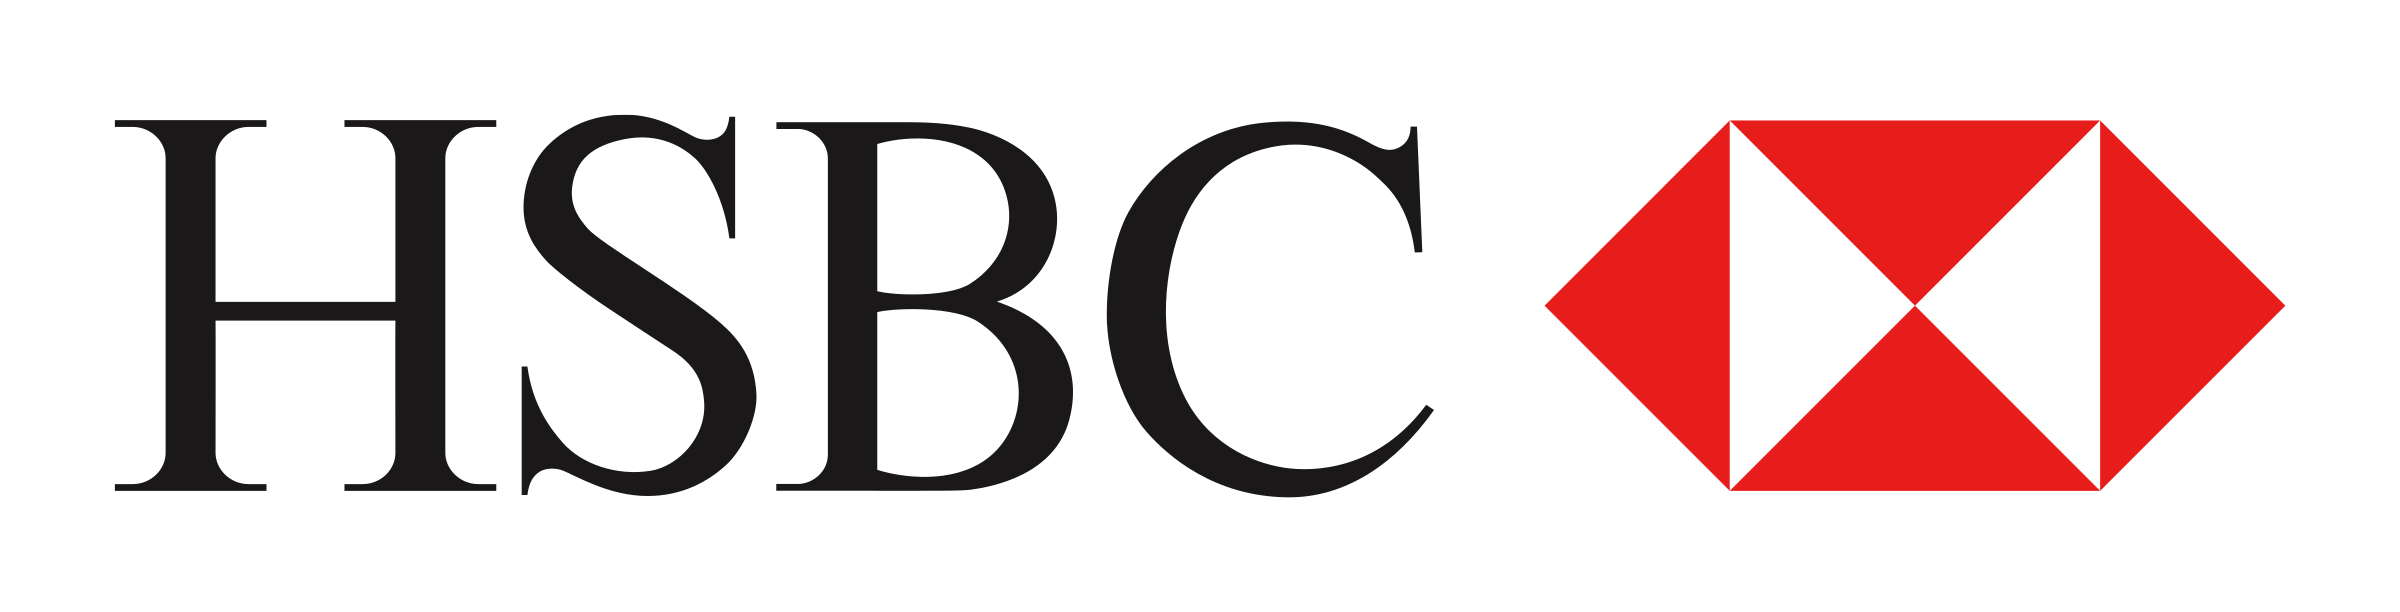 Hsbc Logo Png Transparent